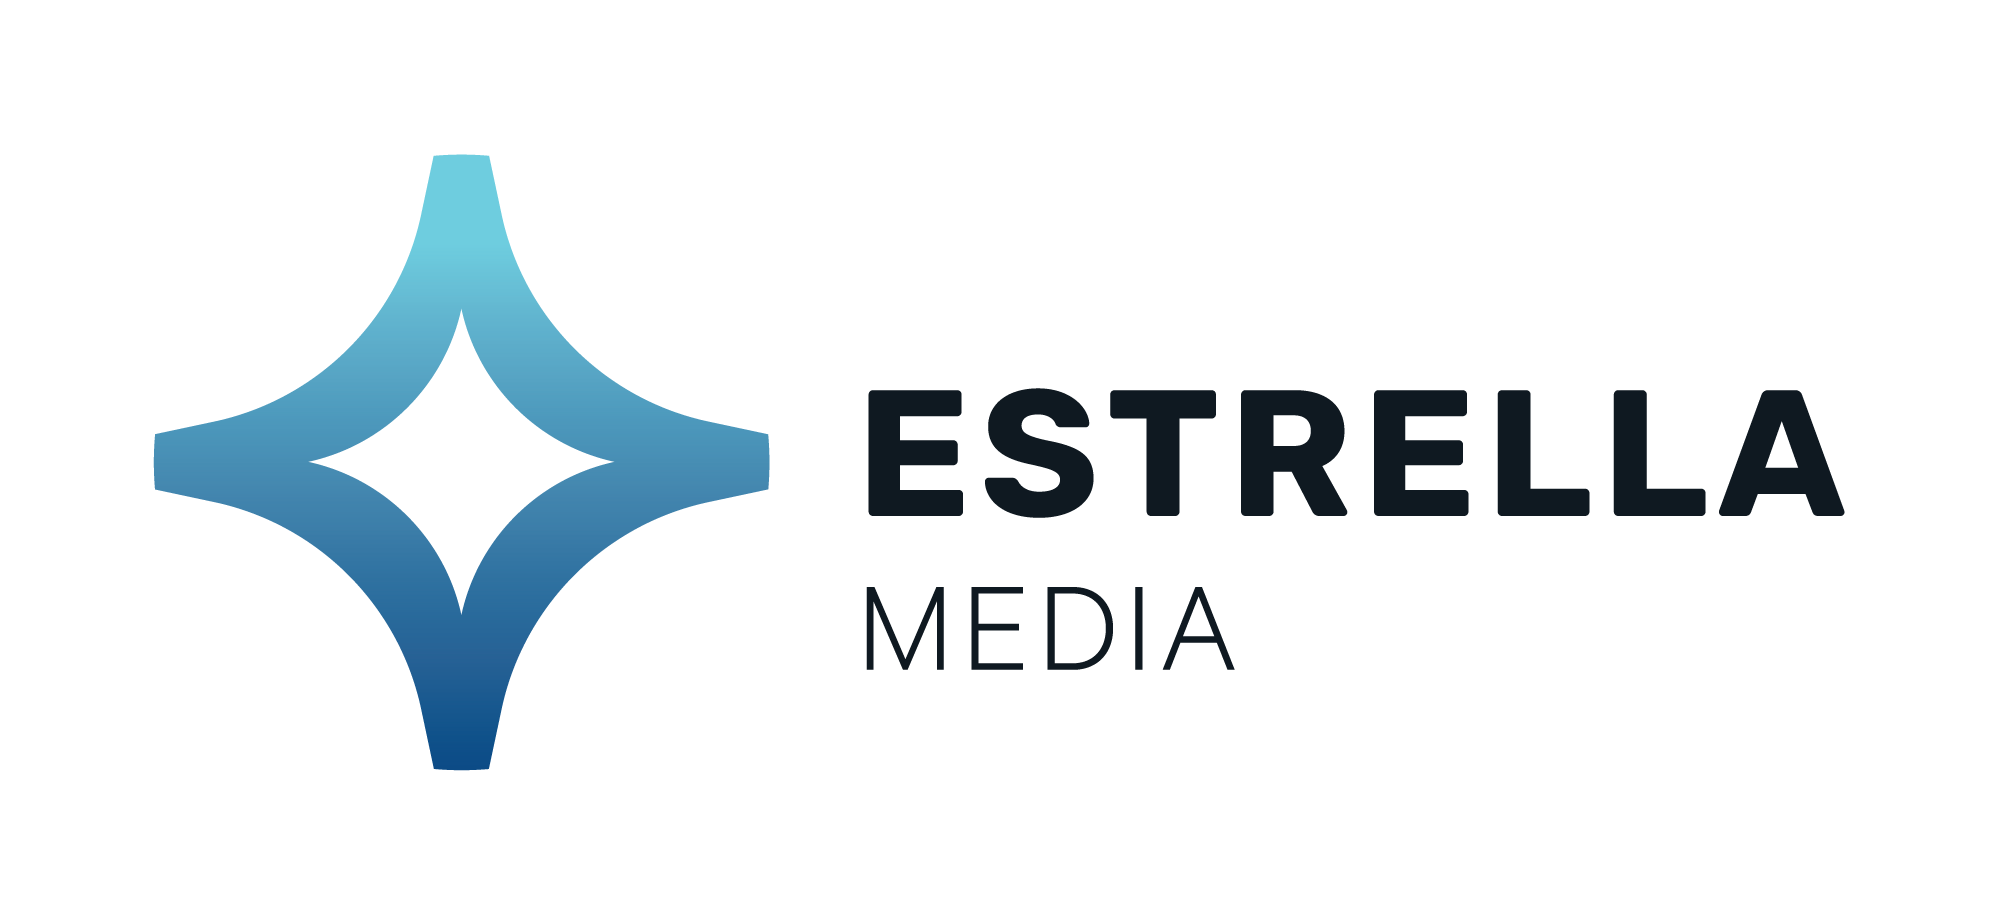 Estrella Media